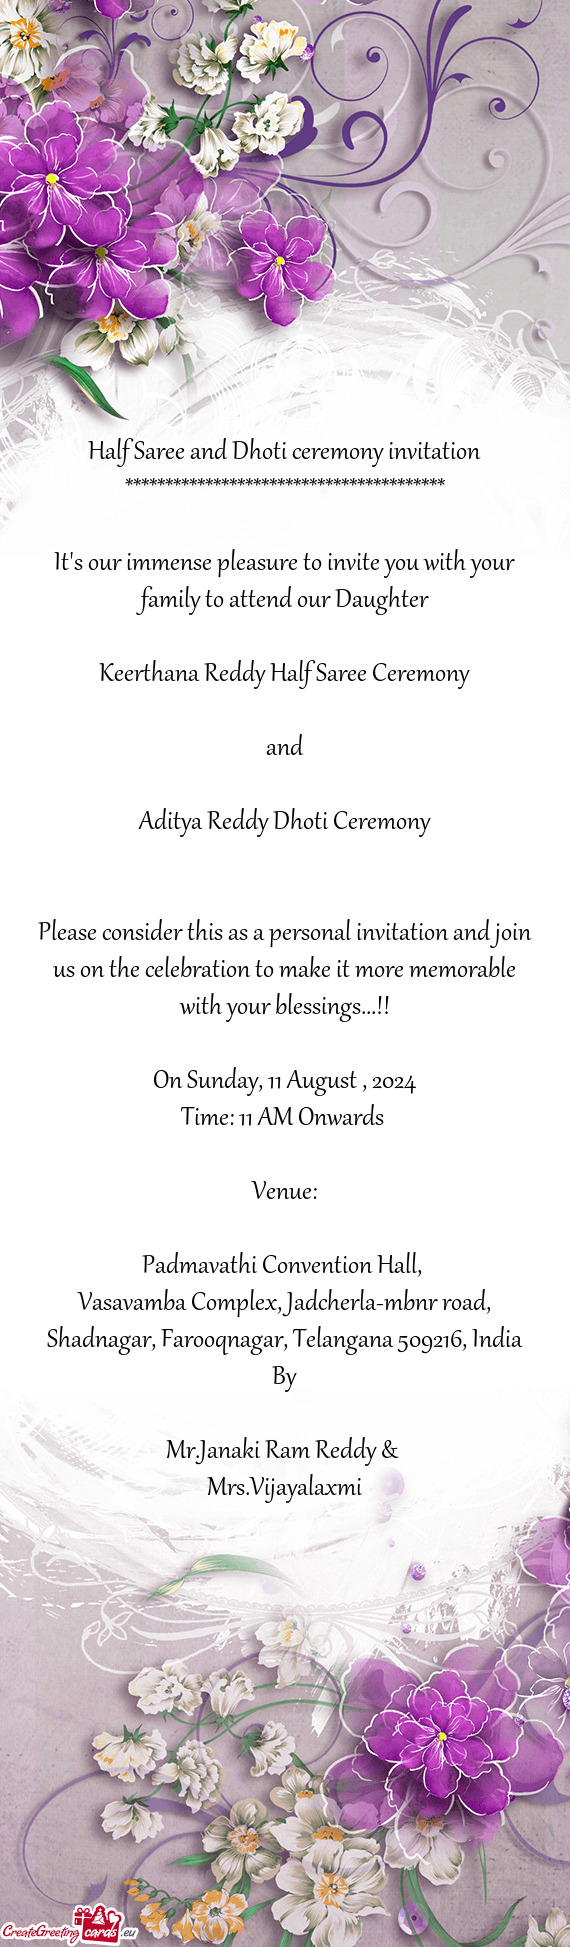 Aditya Reddy Dhoti Ceremony